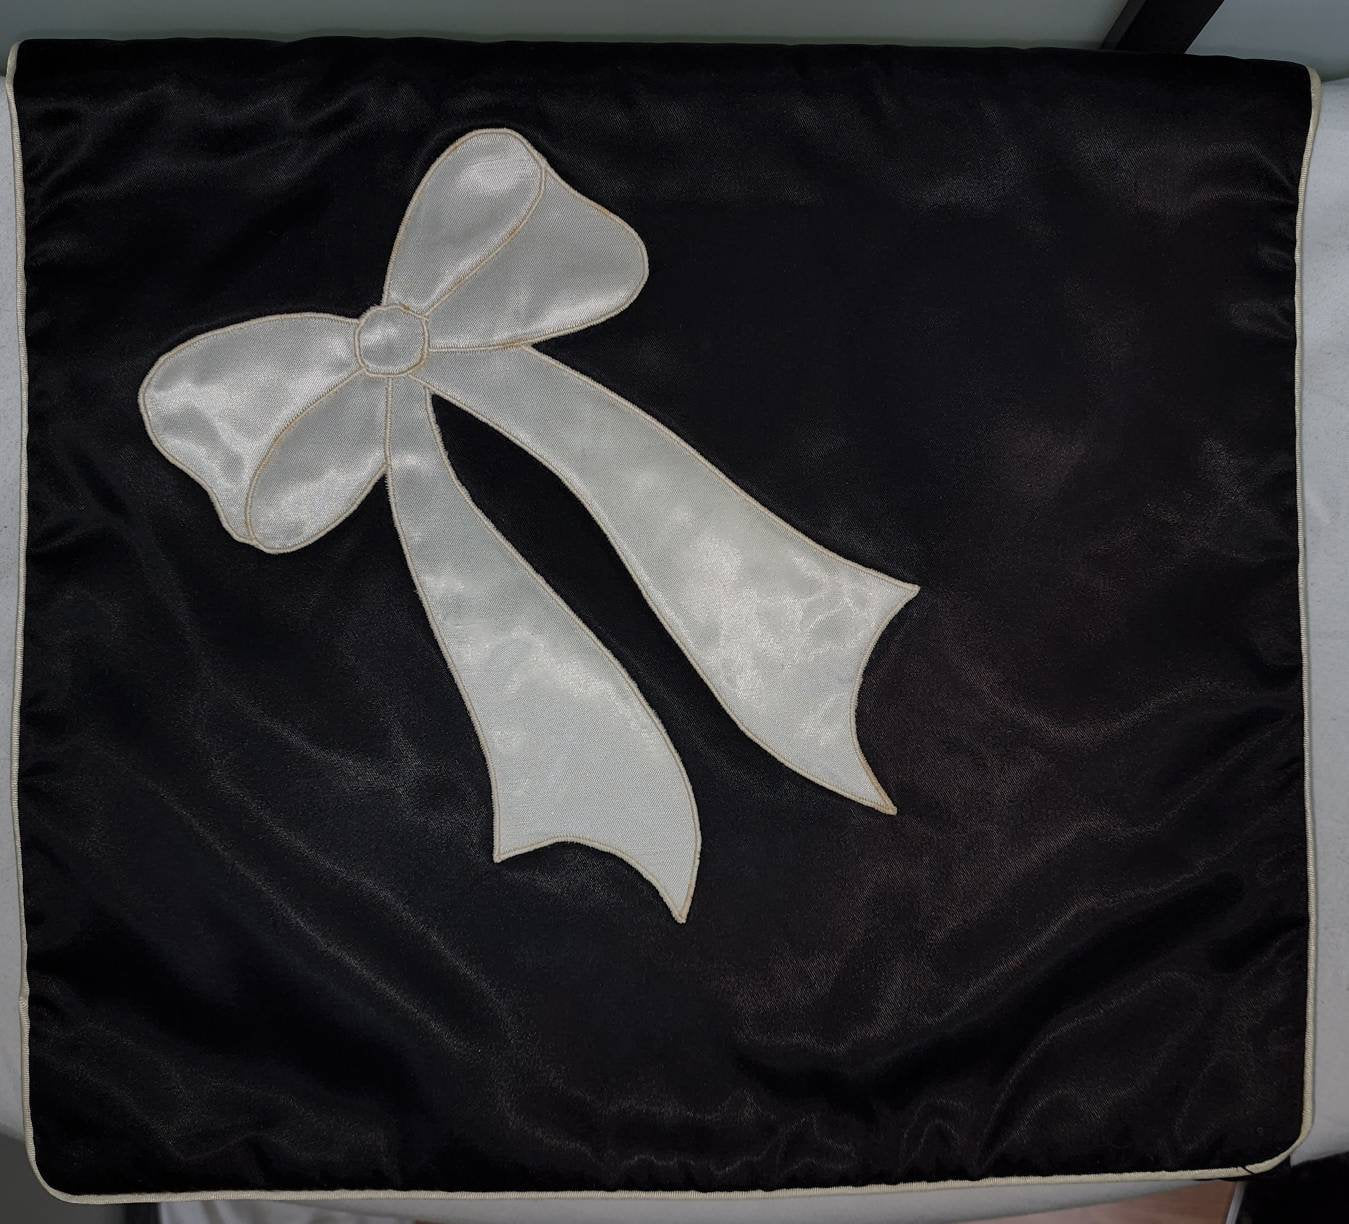 Vintage Lingerie Nightgown Bag 1930s 40s Black Satin Lingerie Case Bag Envelope White Bow Applique Art Deco Mid Century